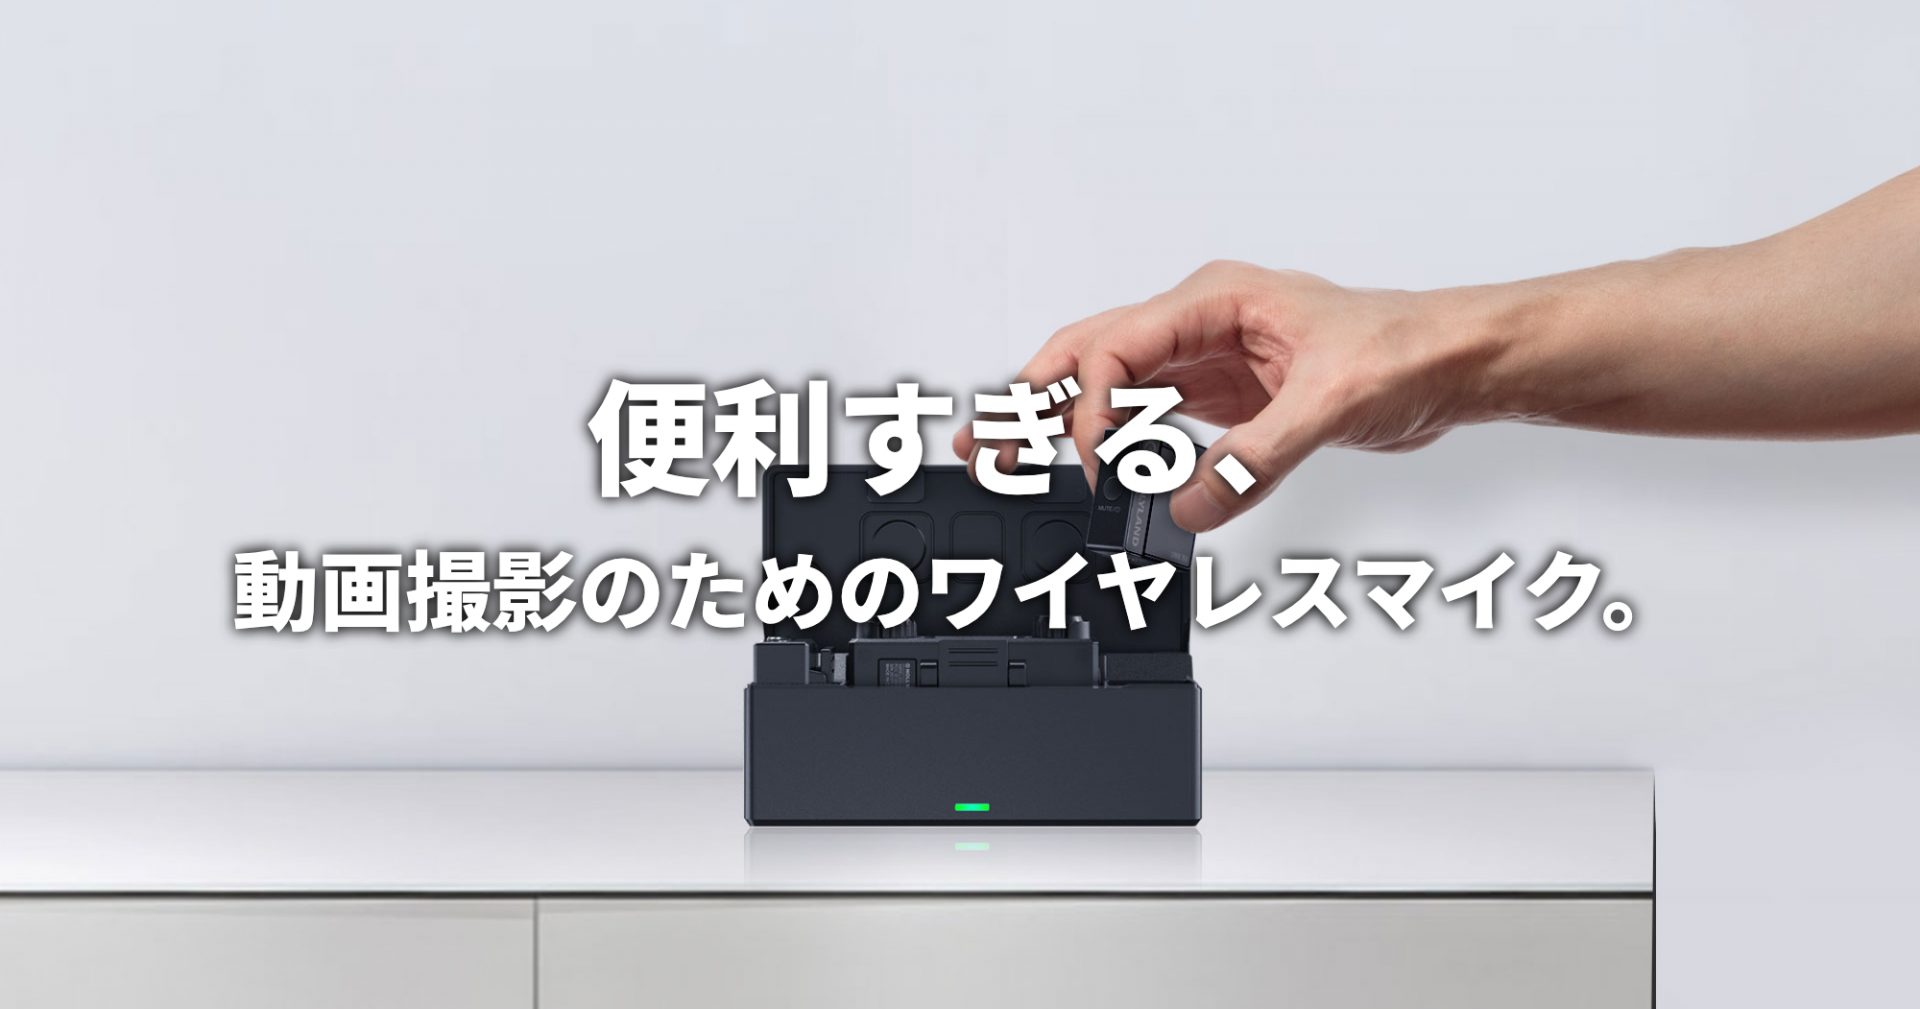 便利すぎる、動画撮影のためのワイヤレスマイク。 | SkyLink Japan